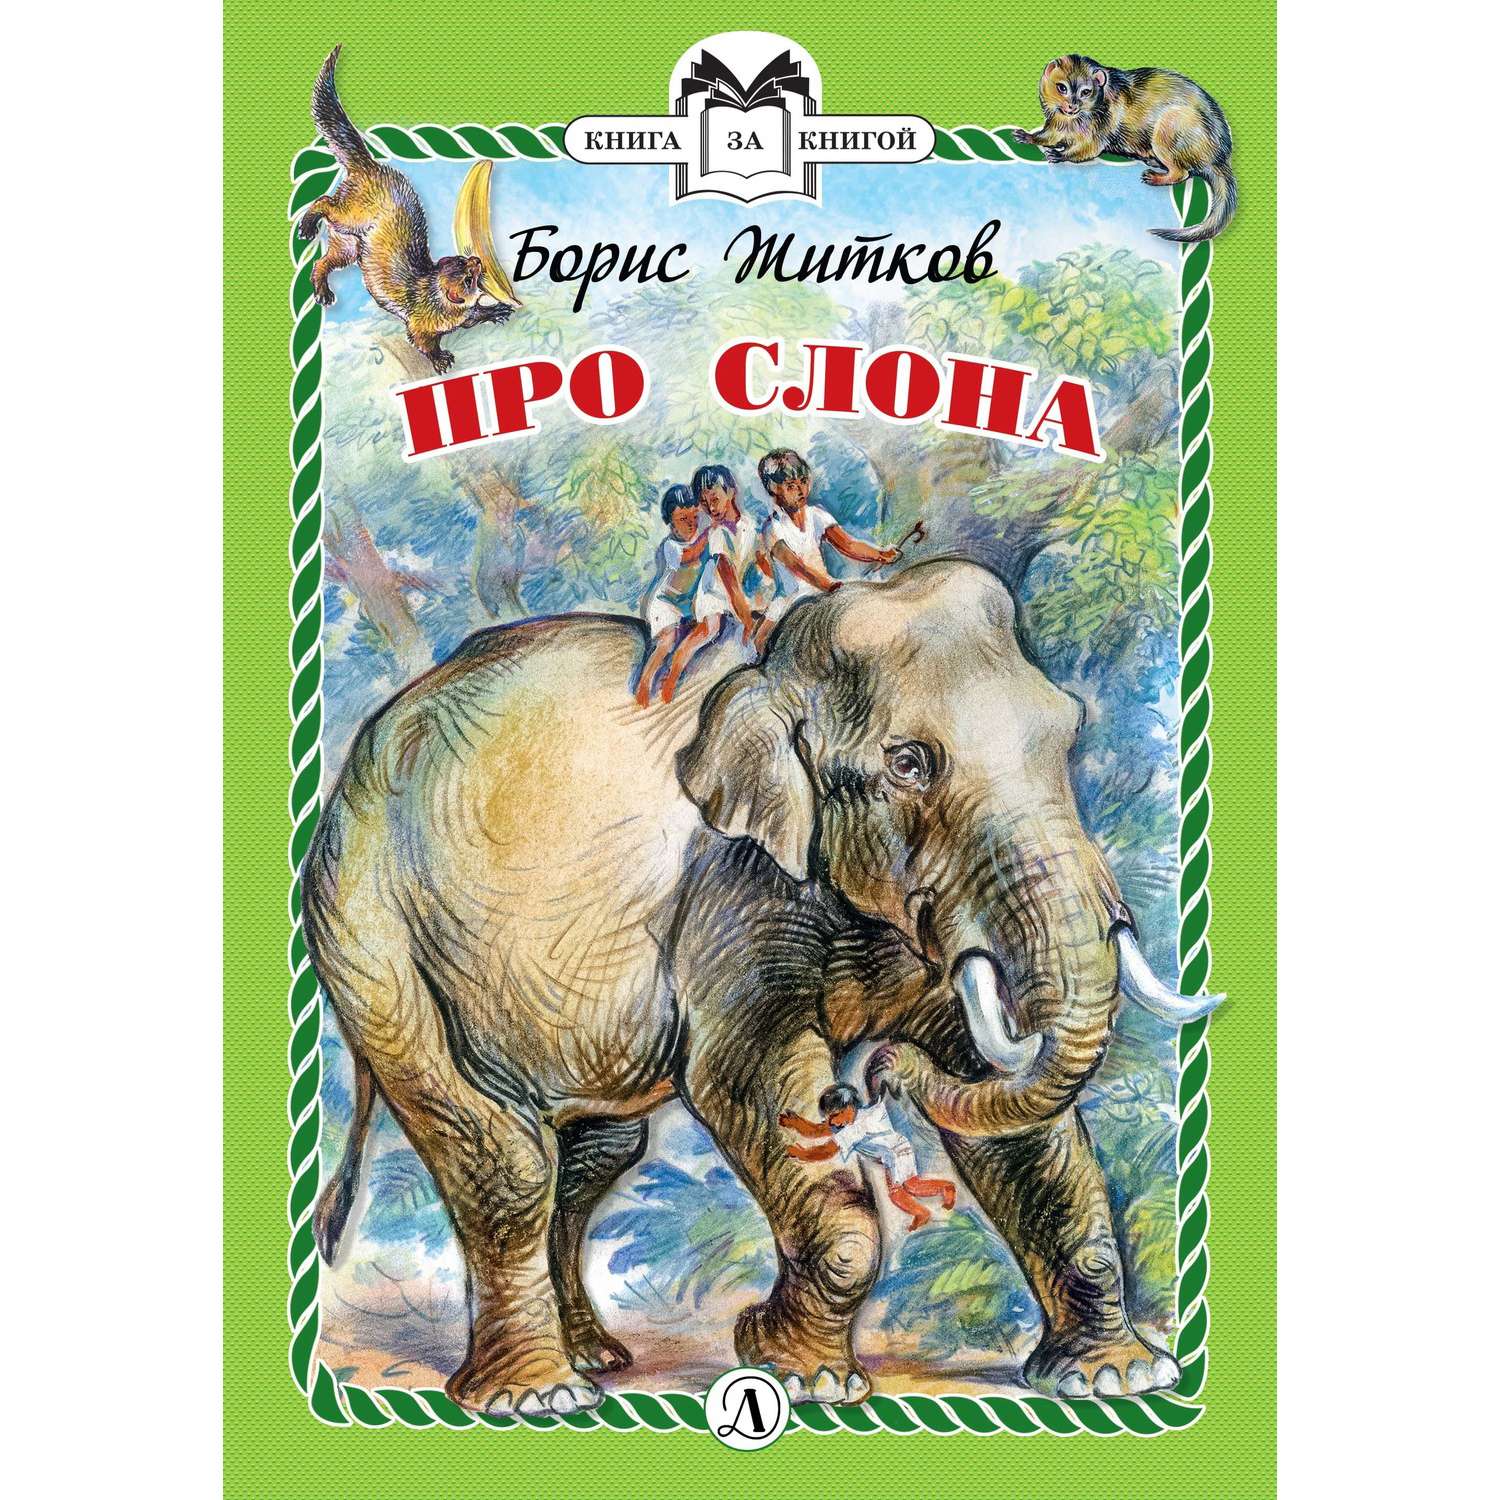 Читать про слона. Житков б.с. "про слона". Книга Житкова про слона. Рассказ про слона Житков.